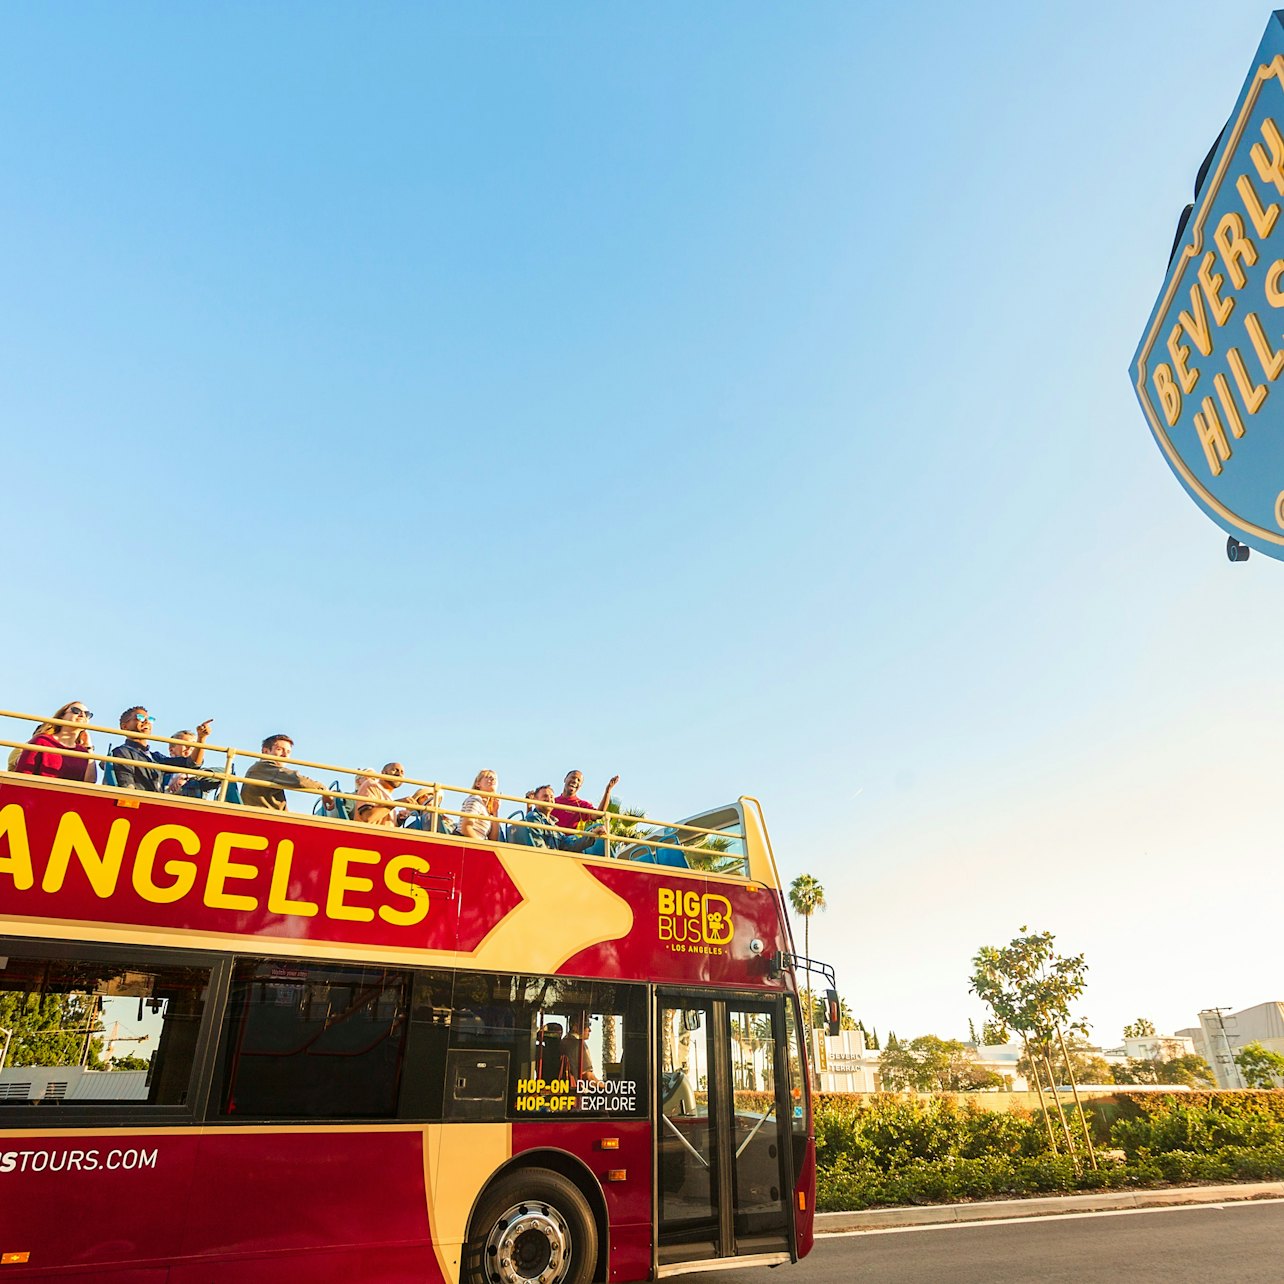 Visita al Teatro Chino TCL + Visita panorámica en autobús por Los Ángeles - Alojamientos en Los Ángeles